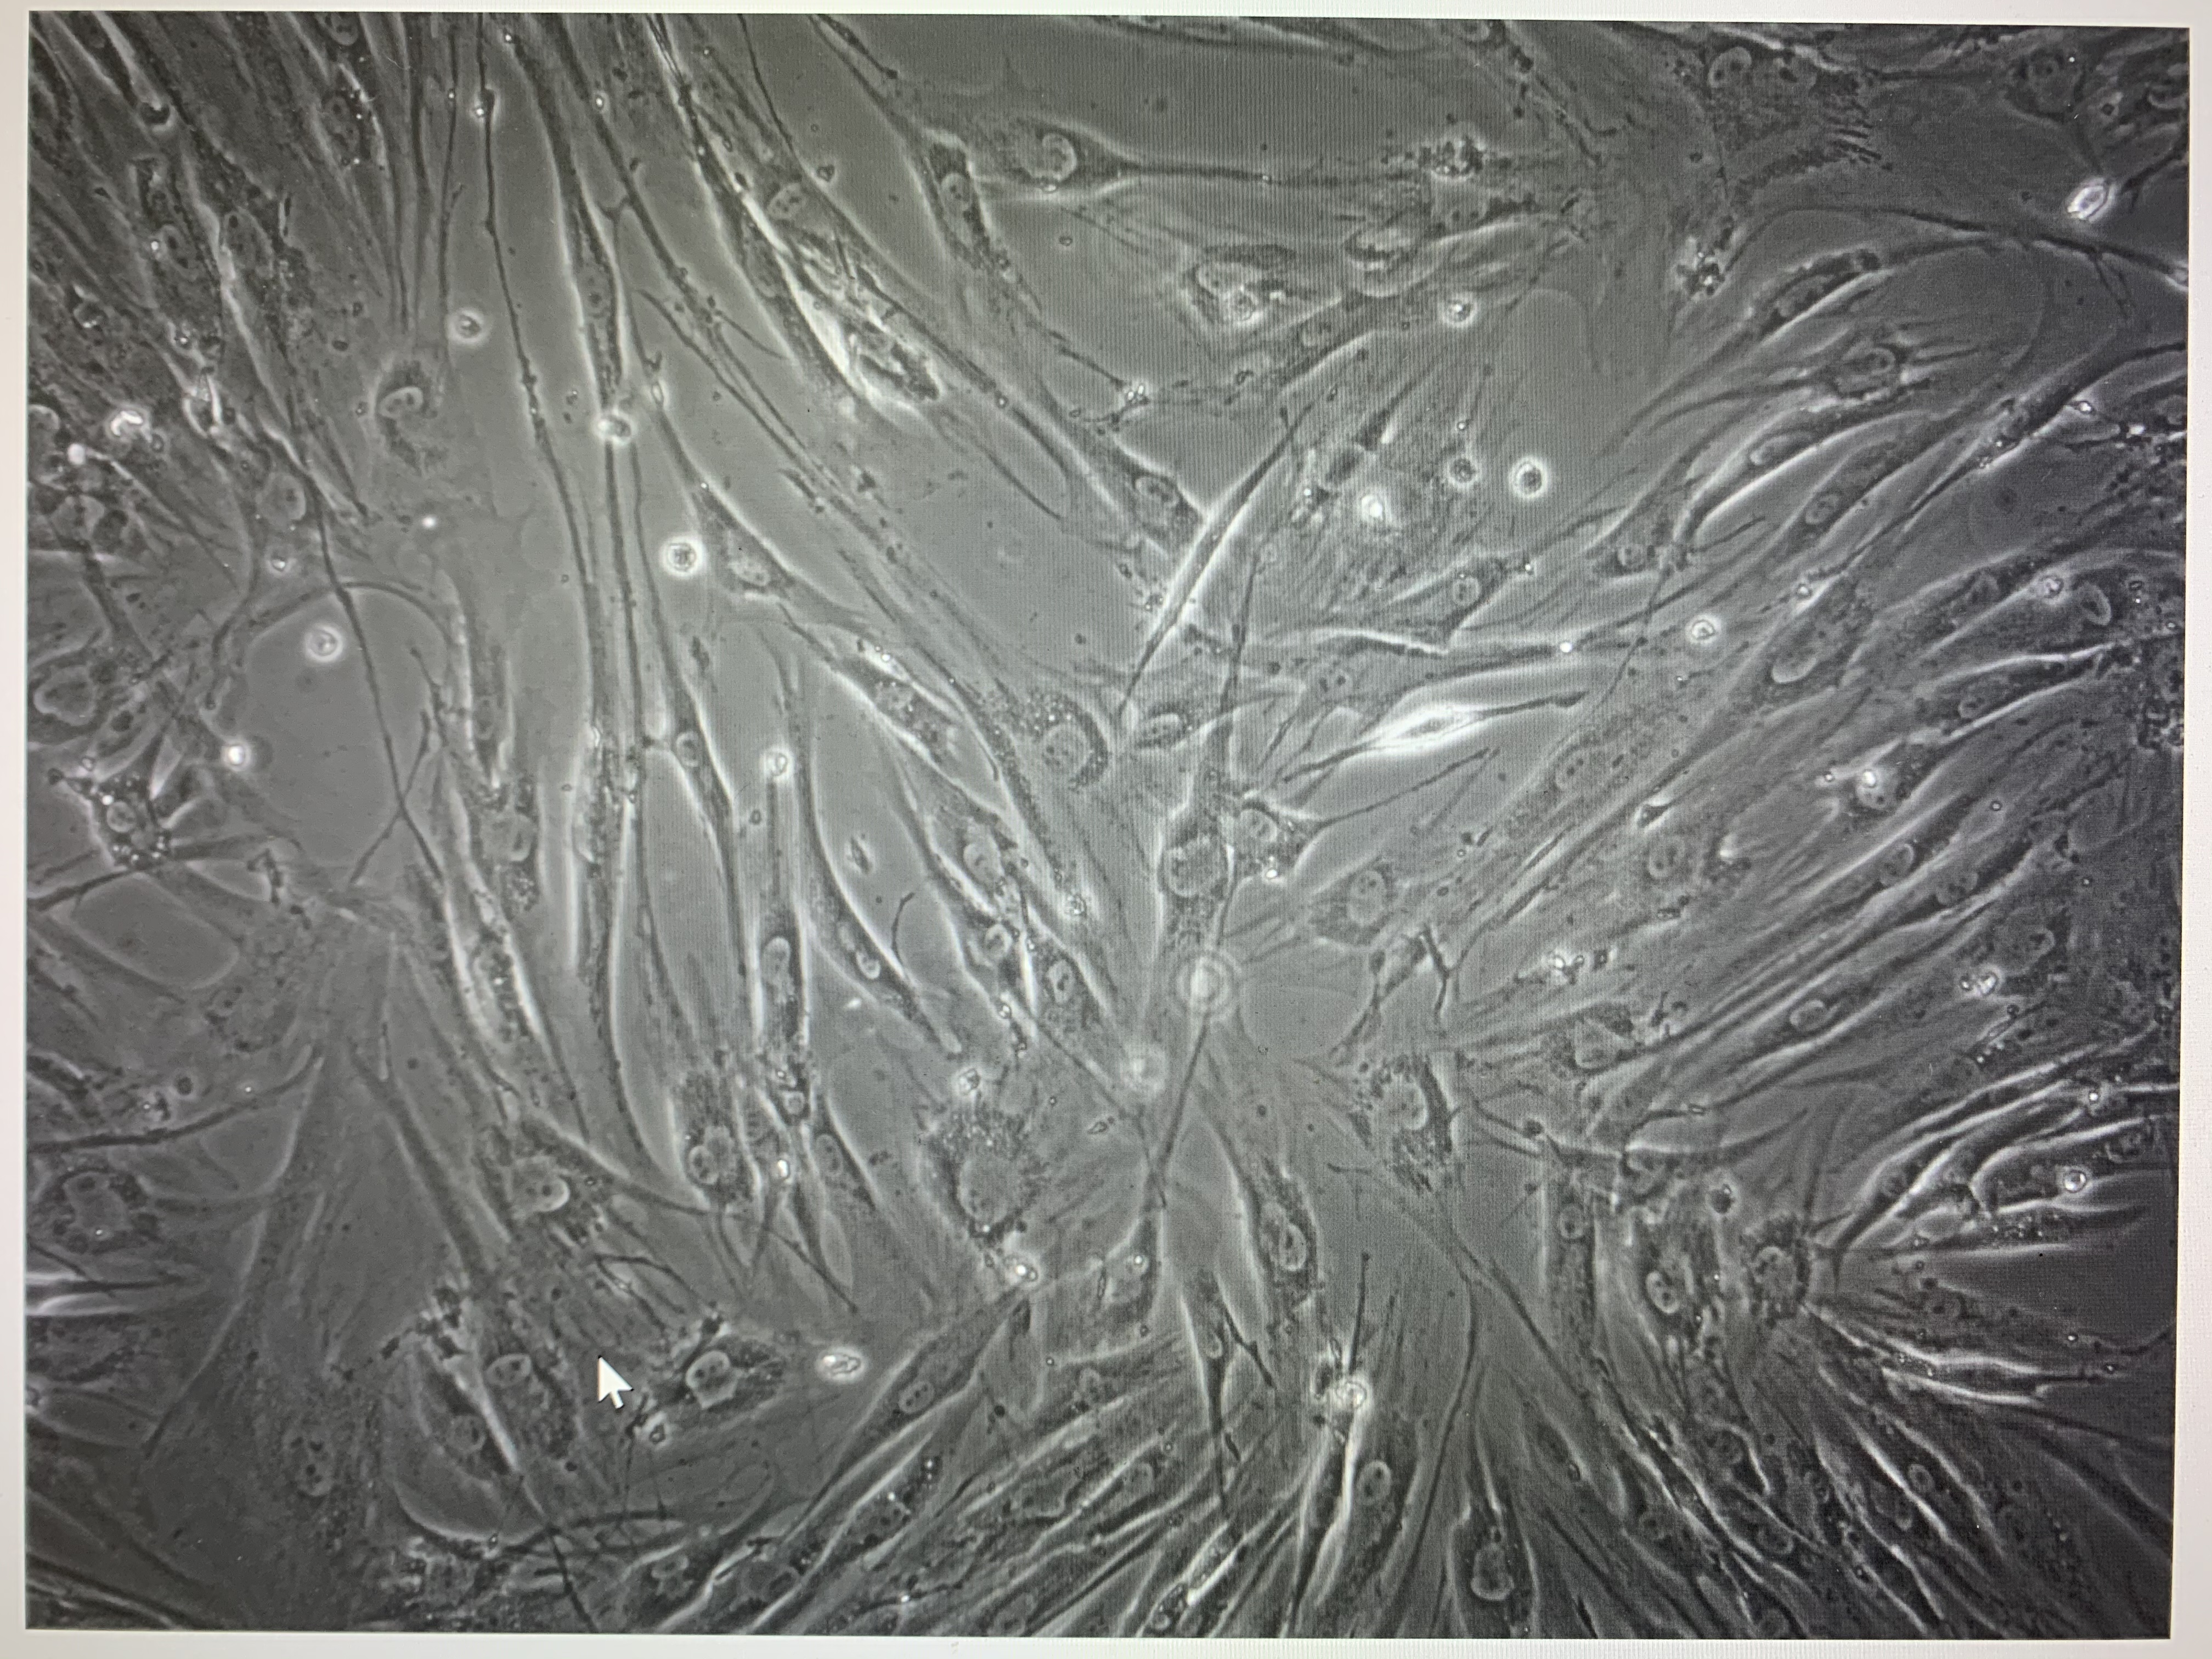 成纤维细胞显微镜图片